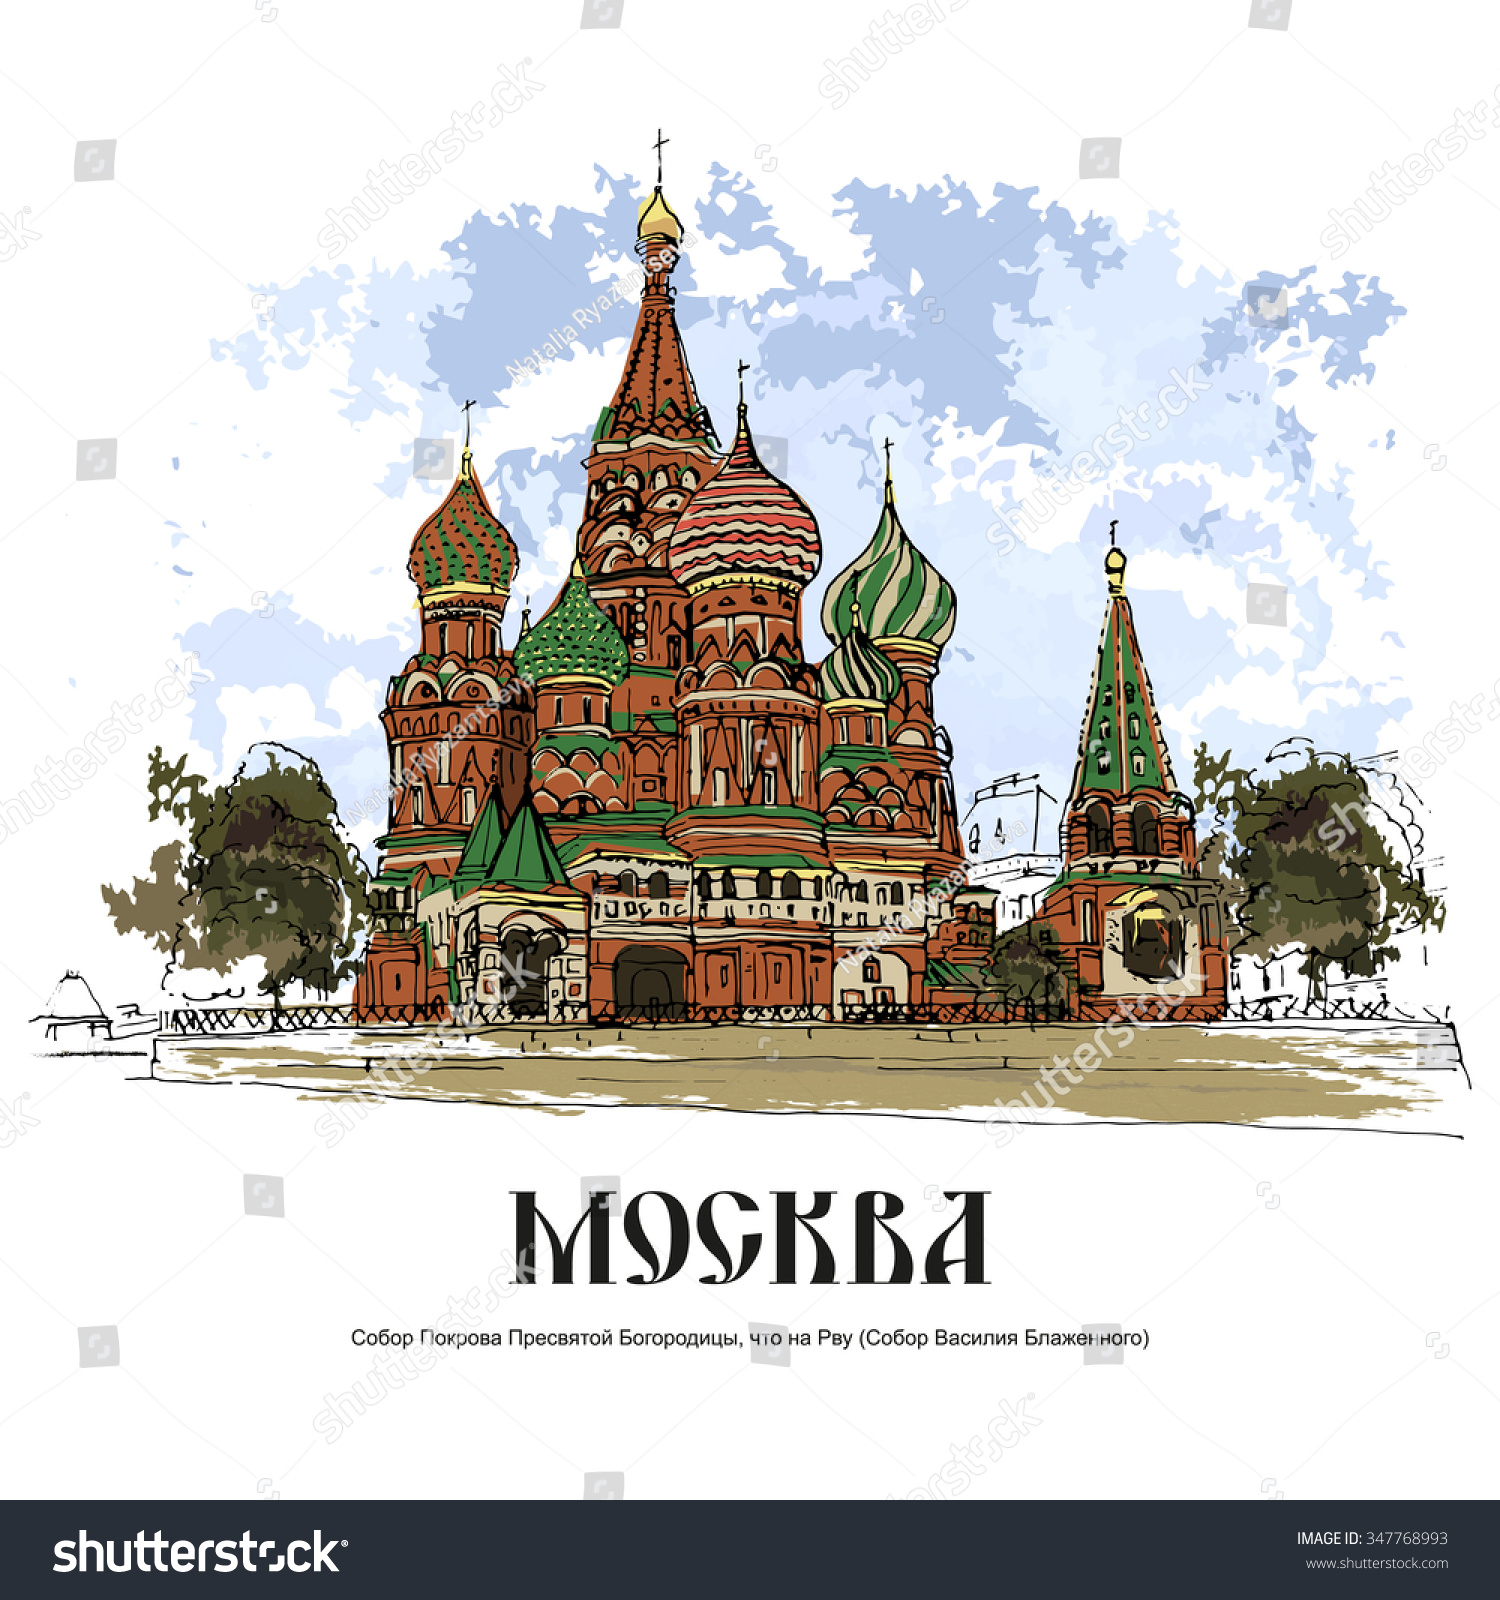 Реклама города Москва рисунок